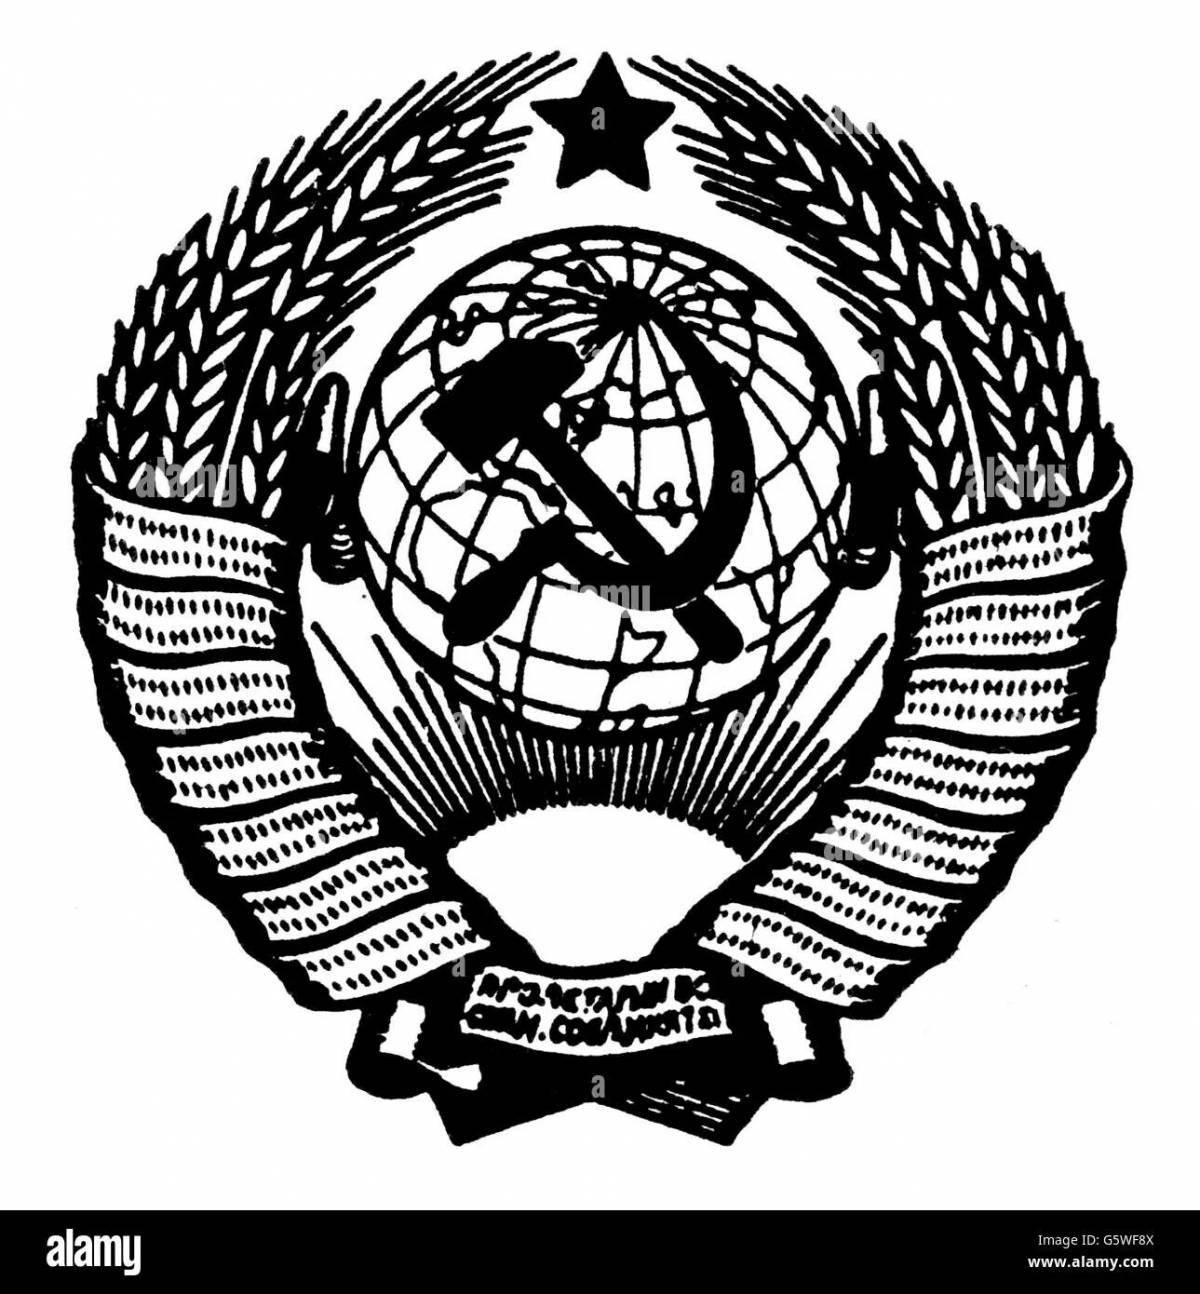 Герб советского союза #7